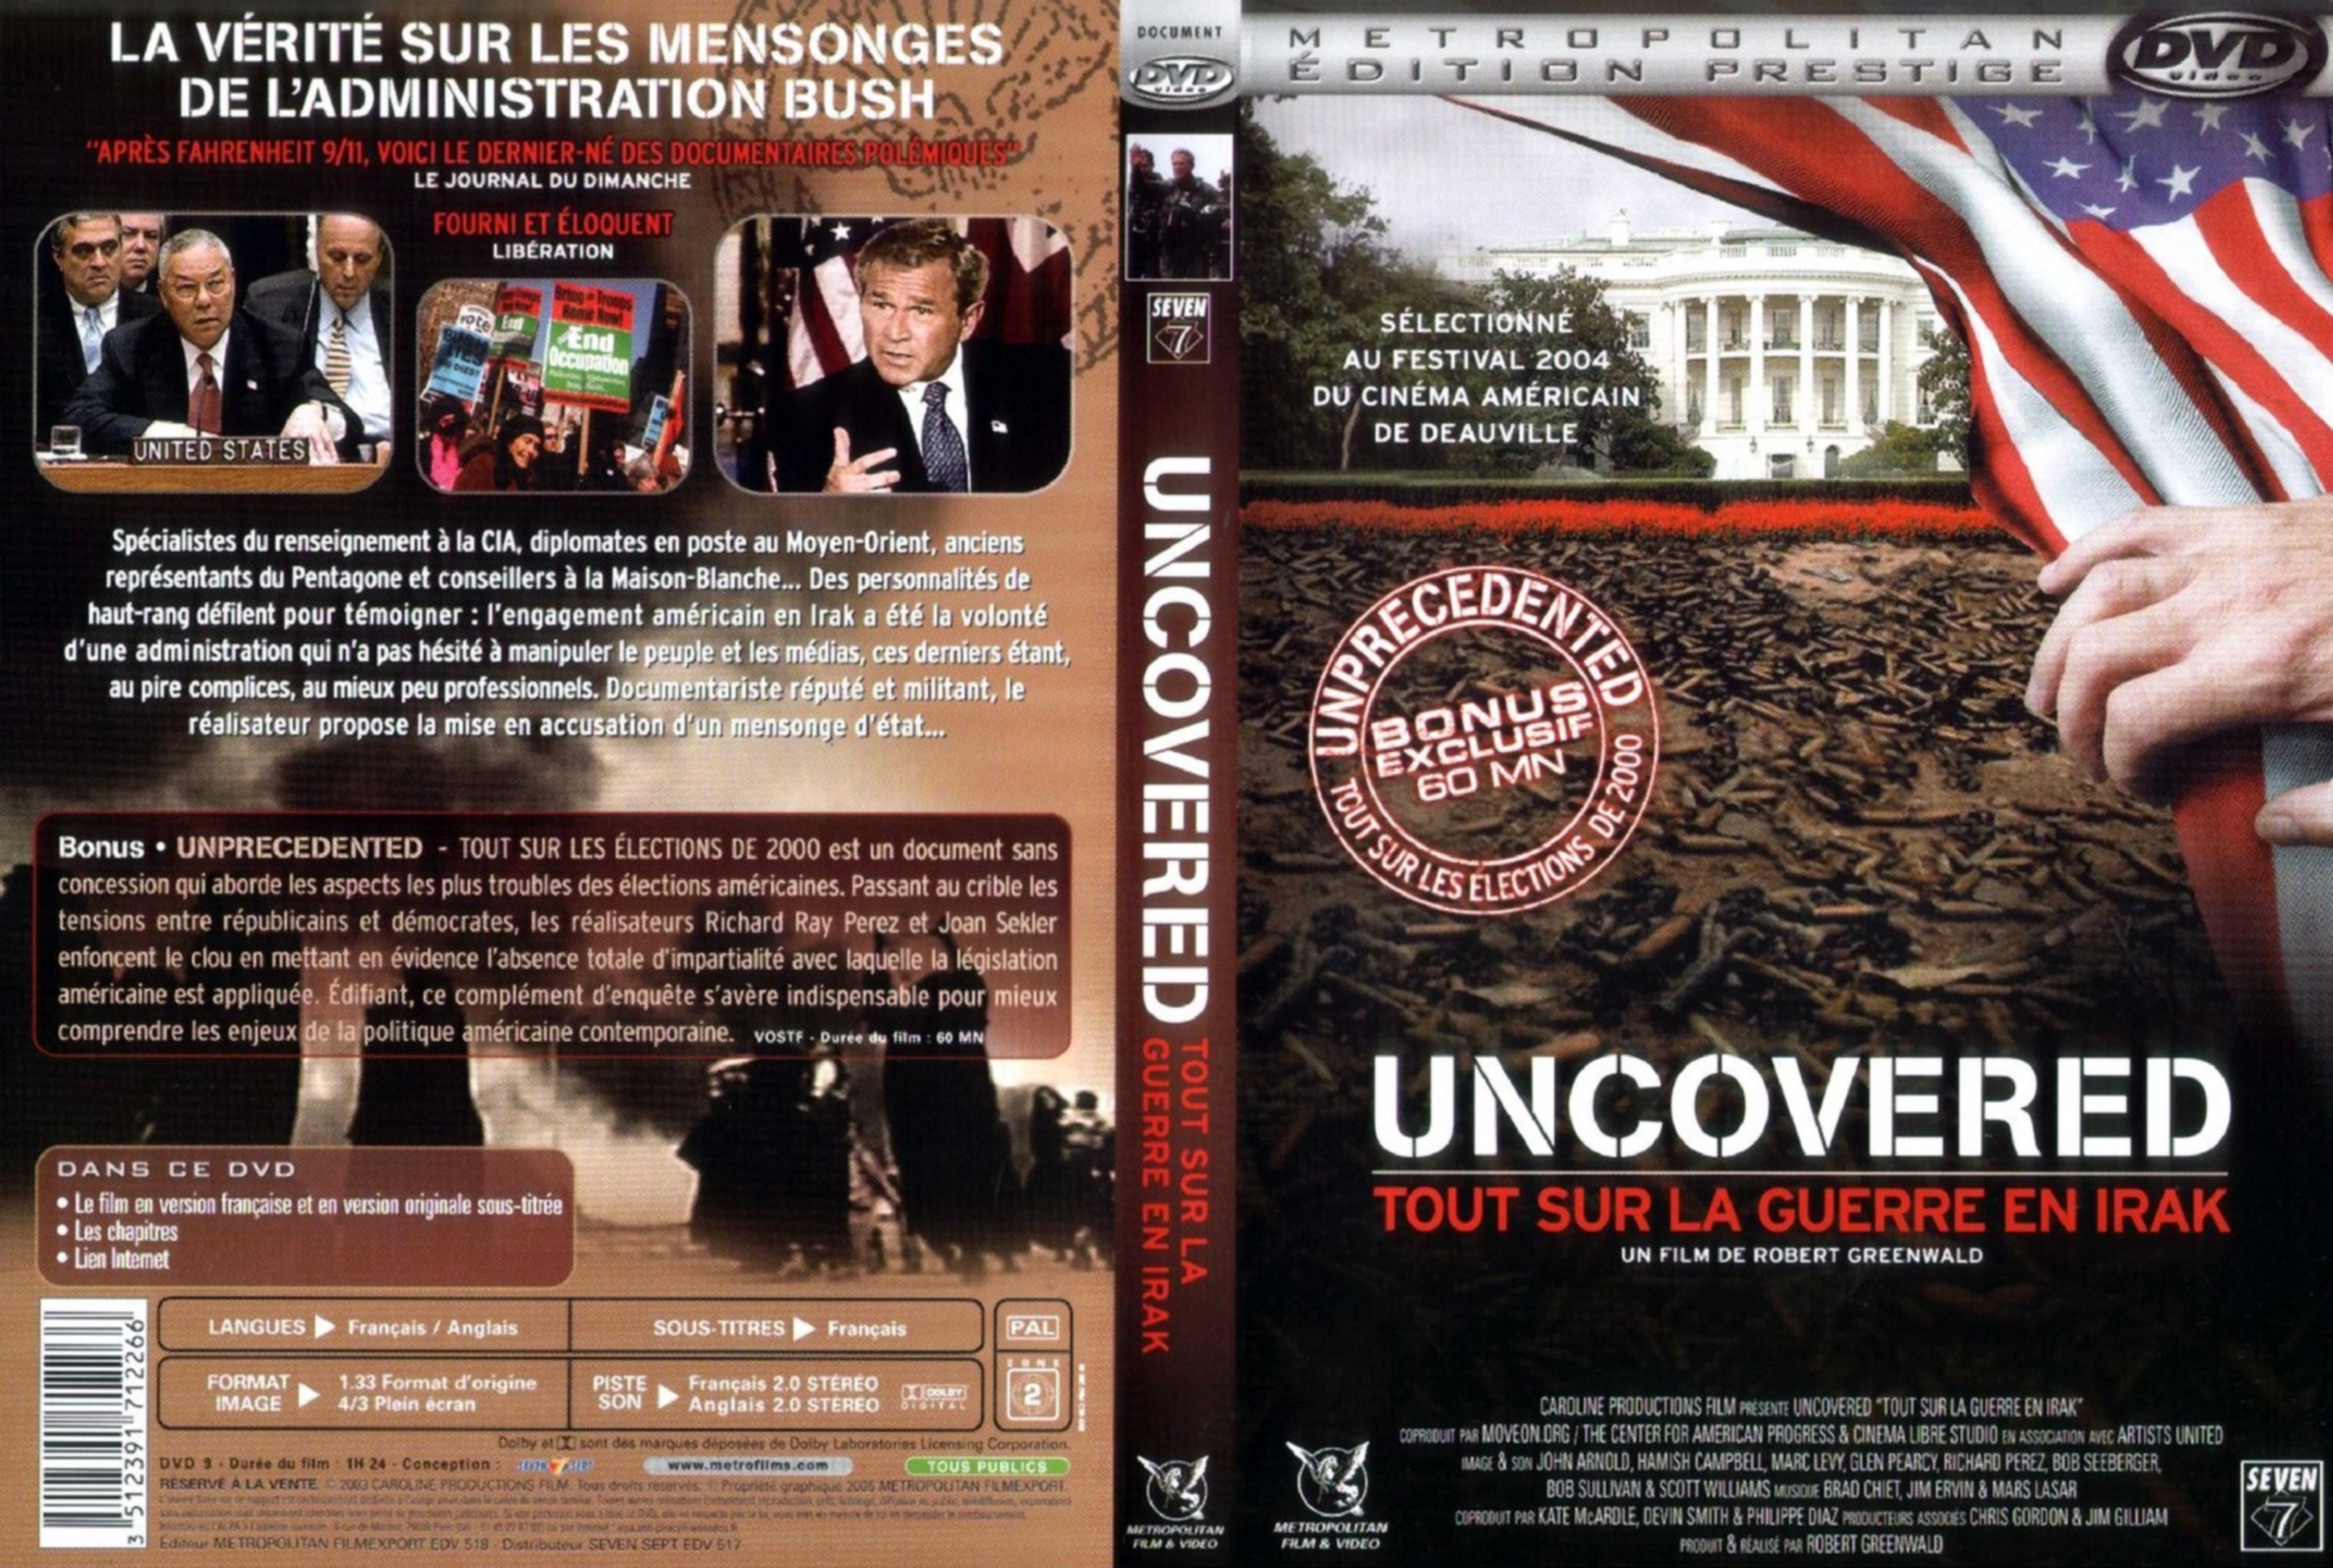 Jaquette DVD Uncovered tout sur la guerre en Irak